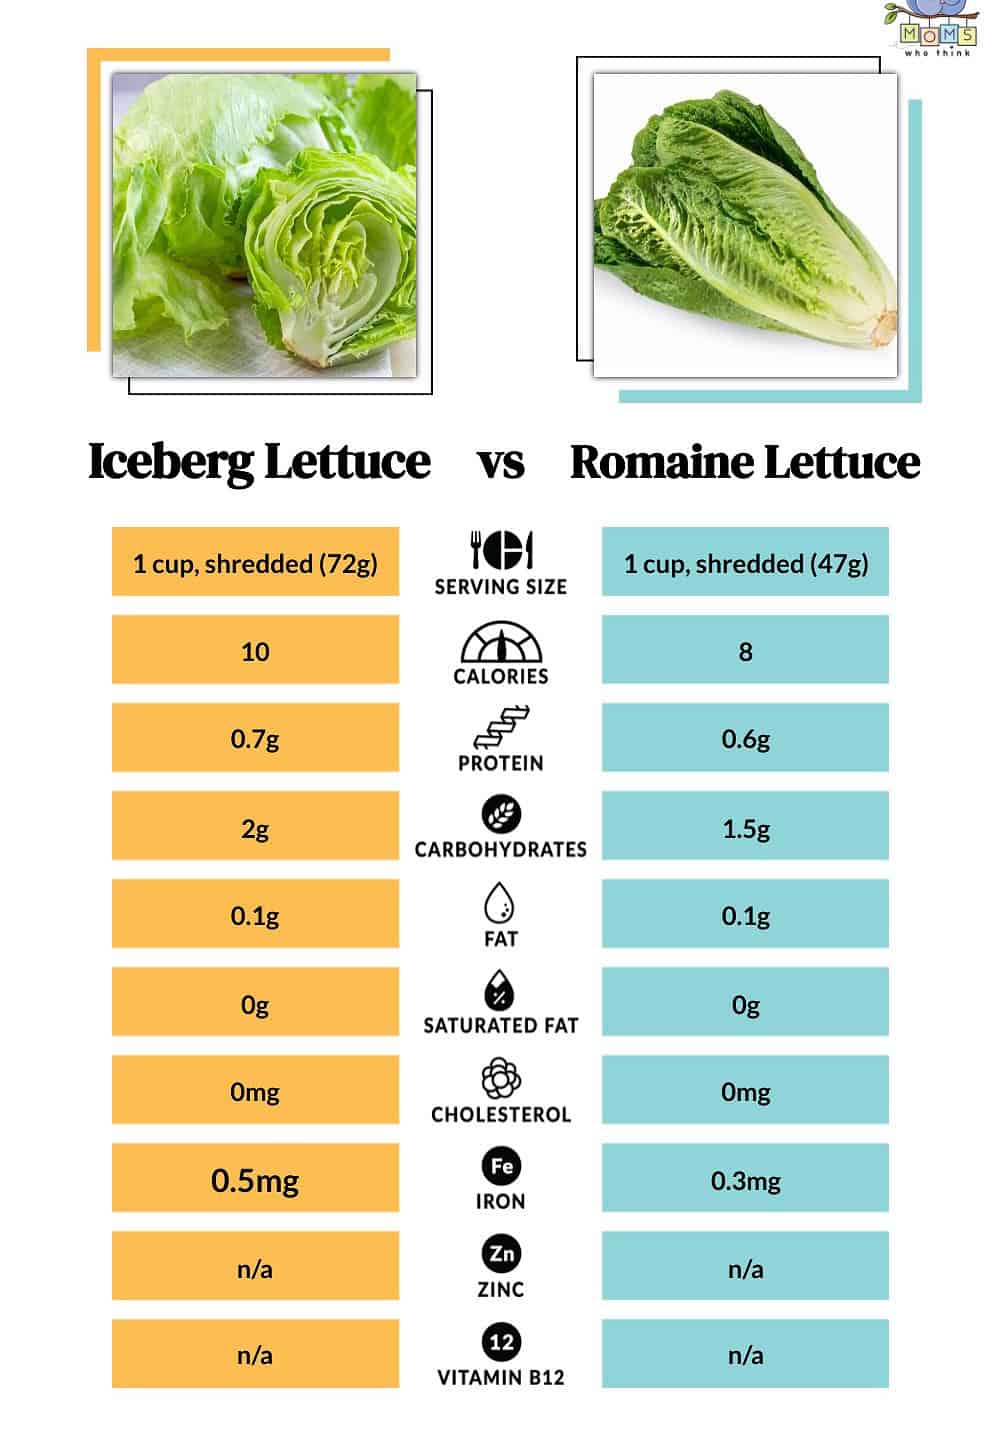 Iceberg Lettuce vs Romaine Lettuce Nutritional Facts